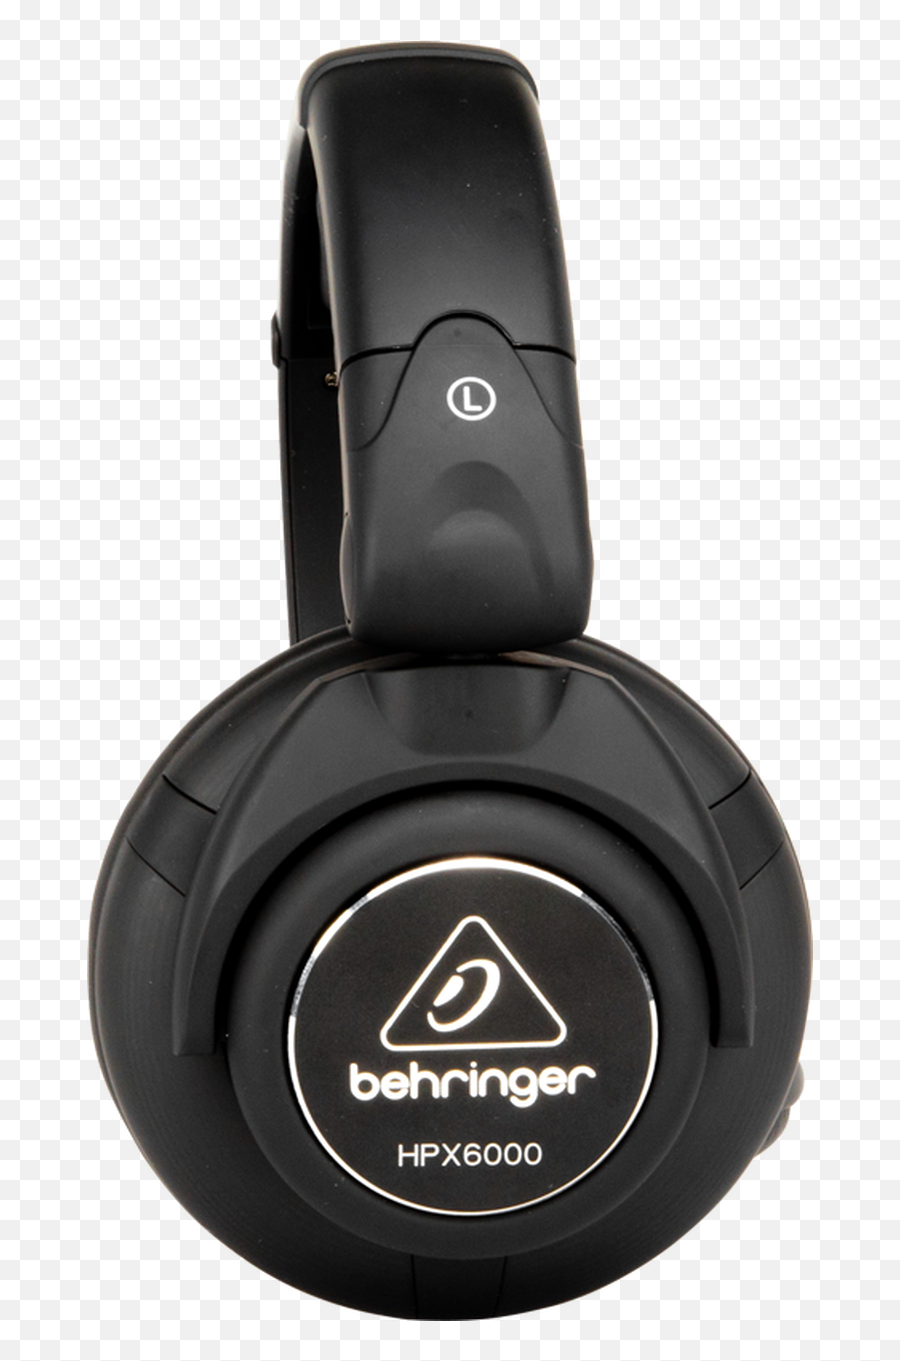 Behringer Hpx6000 Professional Dj Headphones - Behringer Hpx6000 Png,Dj Headphones Png